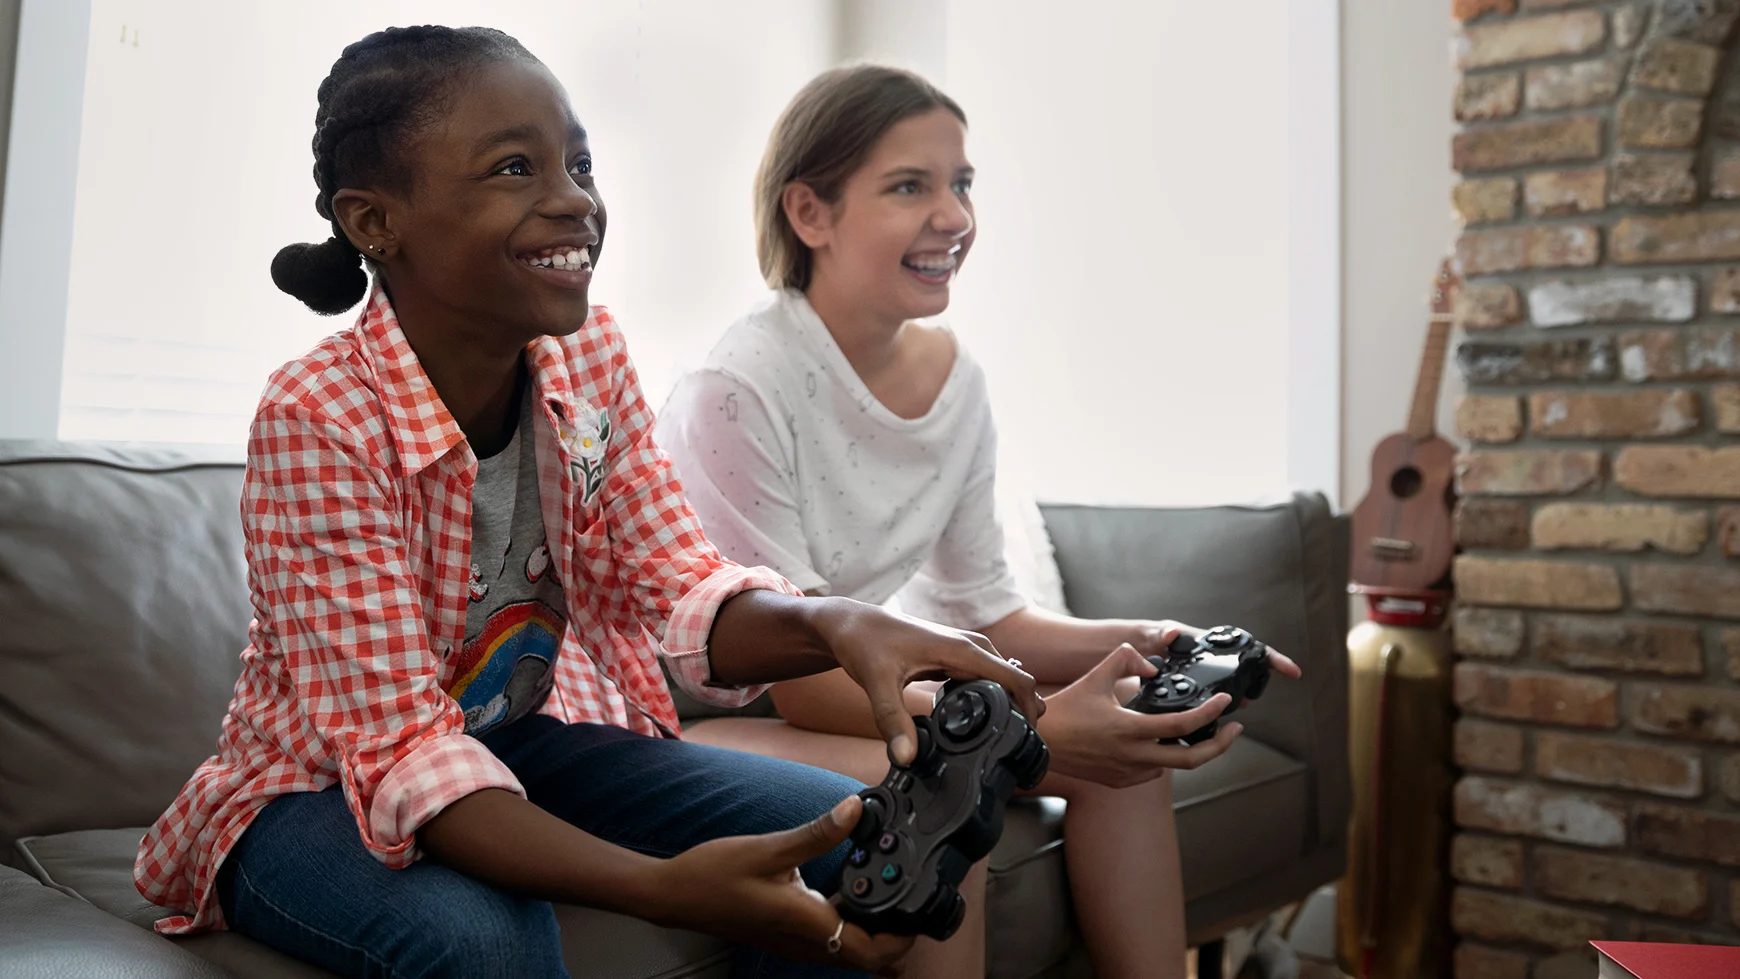 Dos niñas que sonríen están sentadas juntas en un sillón. Juegan un videojuego y sostienen los controles mientras miran la pantalla.